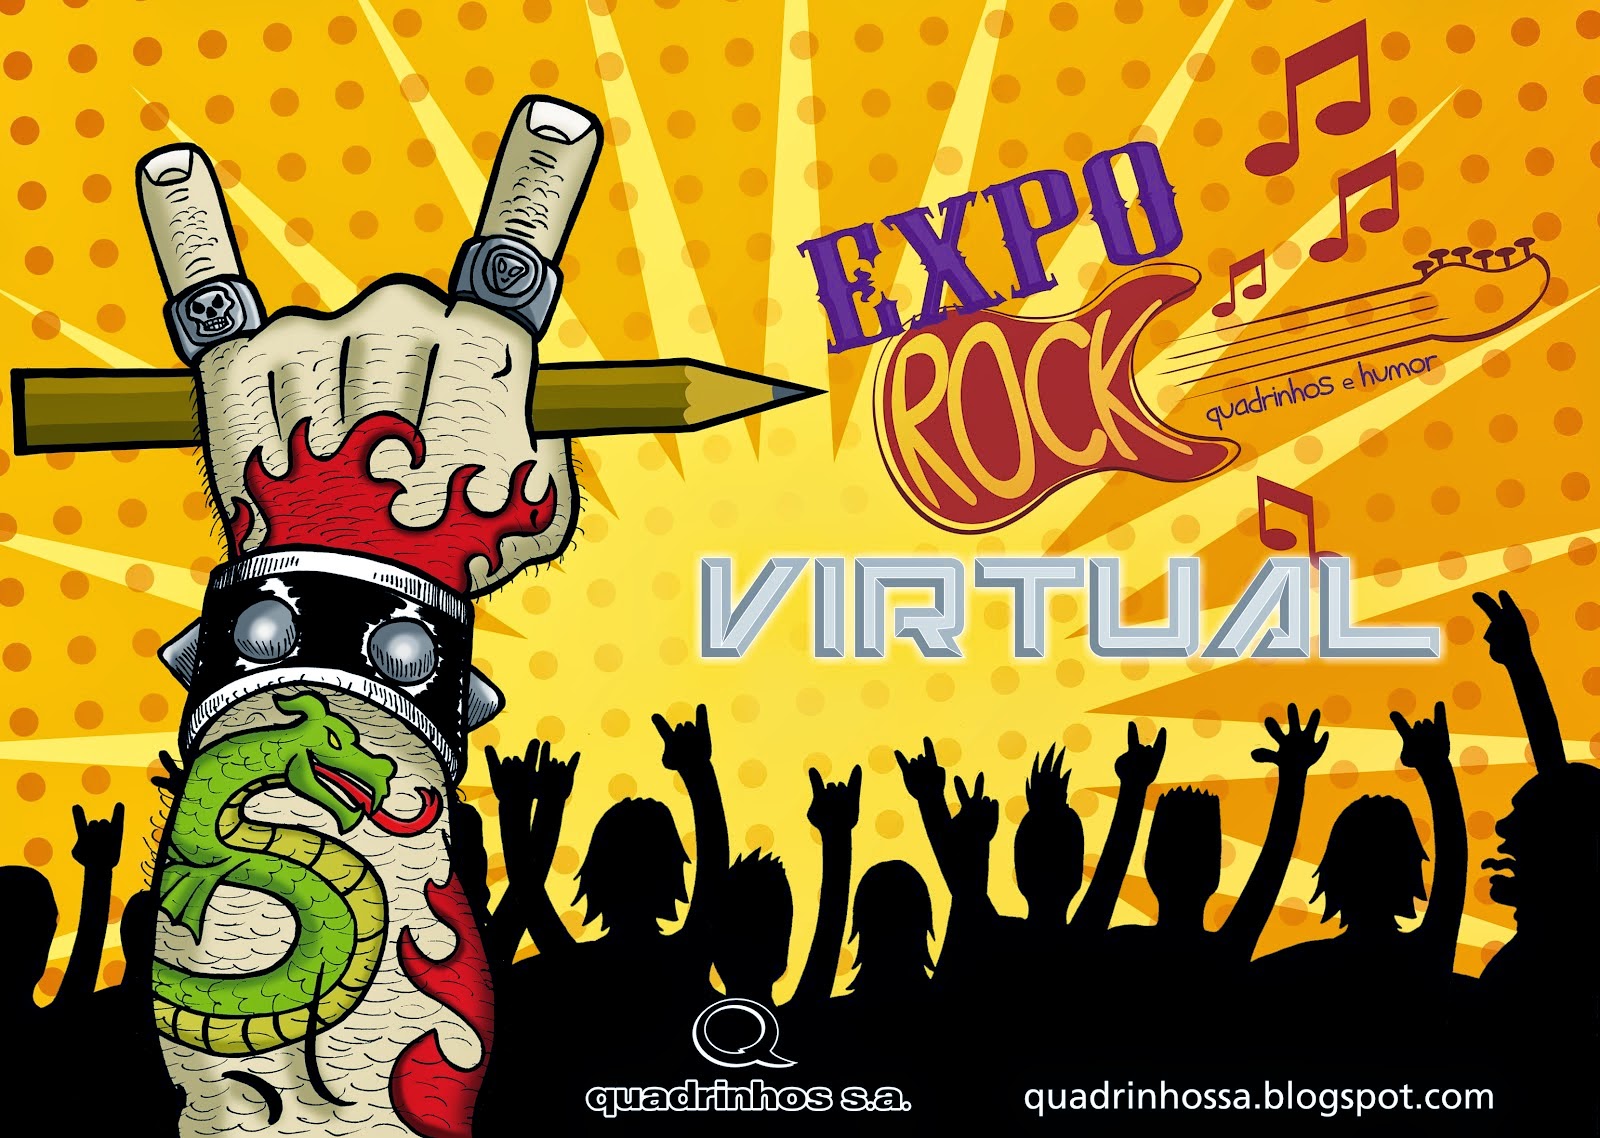 Expo Rock VIRTUAL (2012)